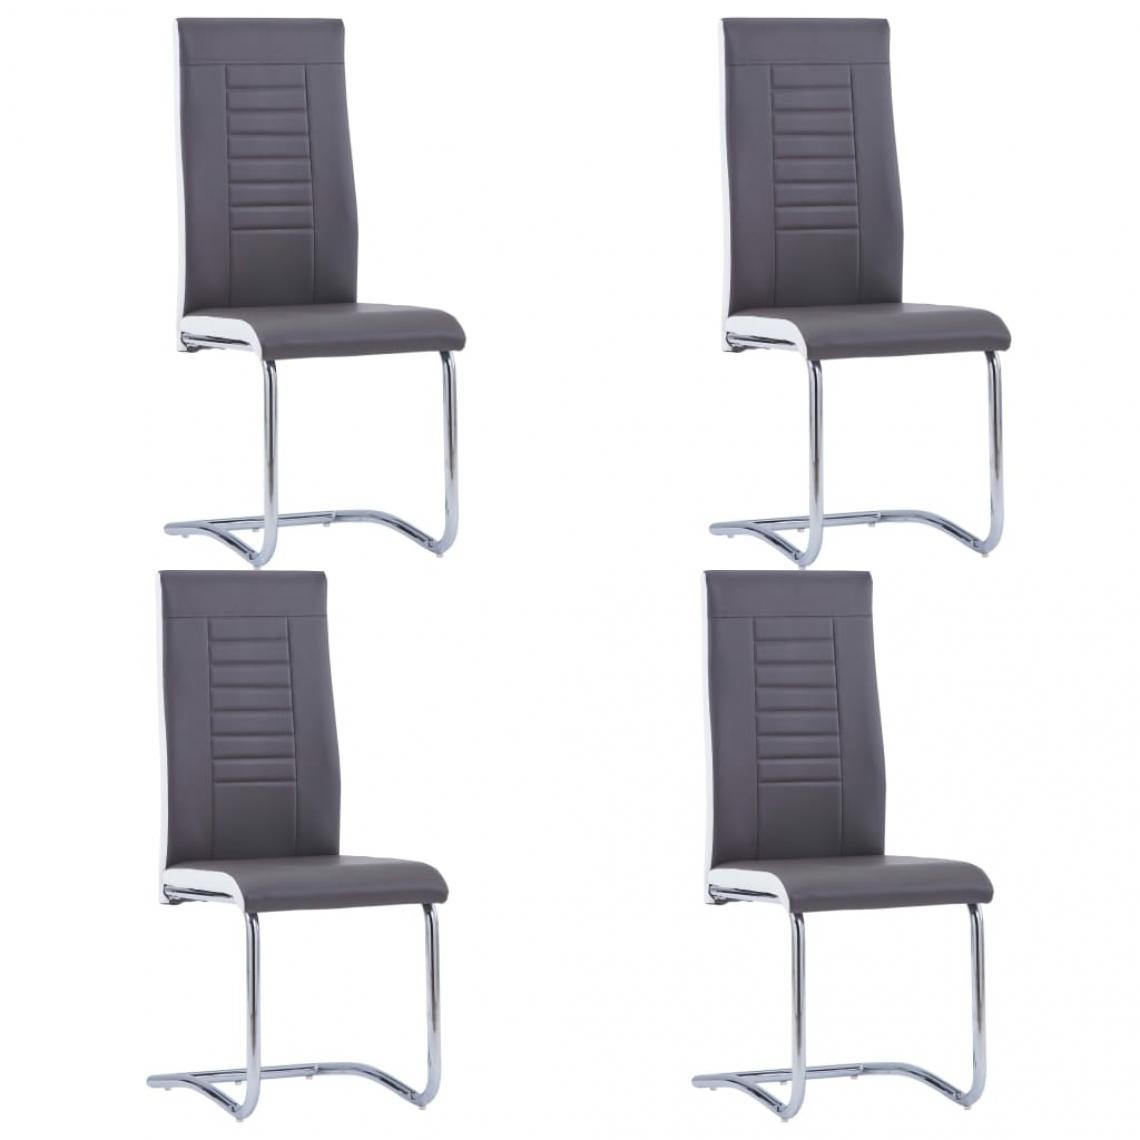 Decoshop26 - Lot de 4 chaises de salle à manger cuisine cantilever design contemporain similicuir gris CDS021377 - Chaises